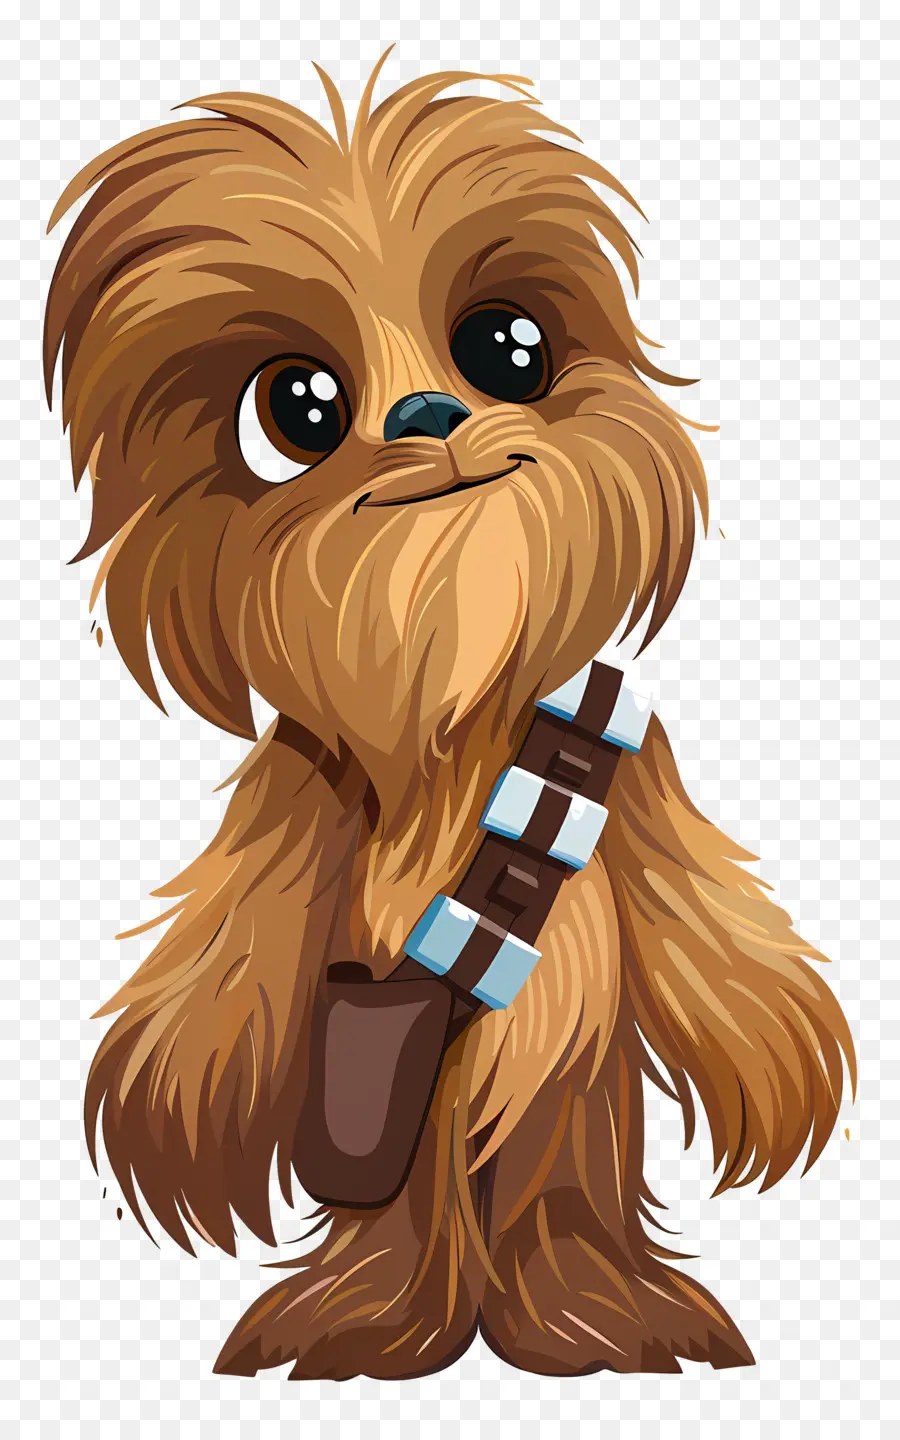 Star Wars - Happy Chewbacca im braunen Outfit, das zuversichtlich steht